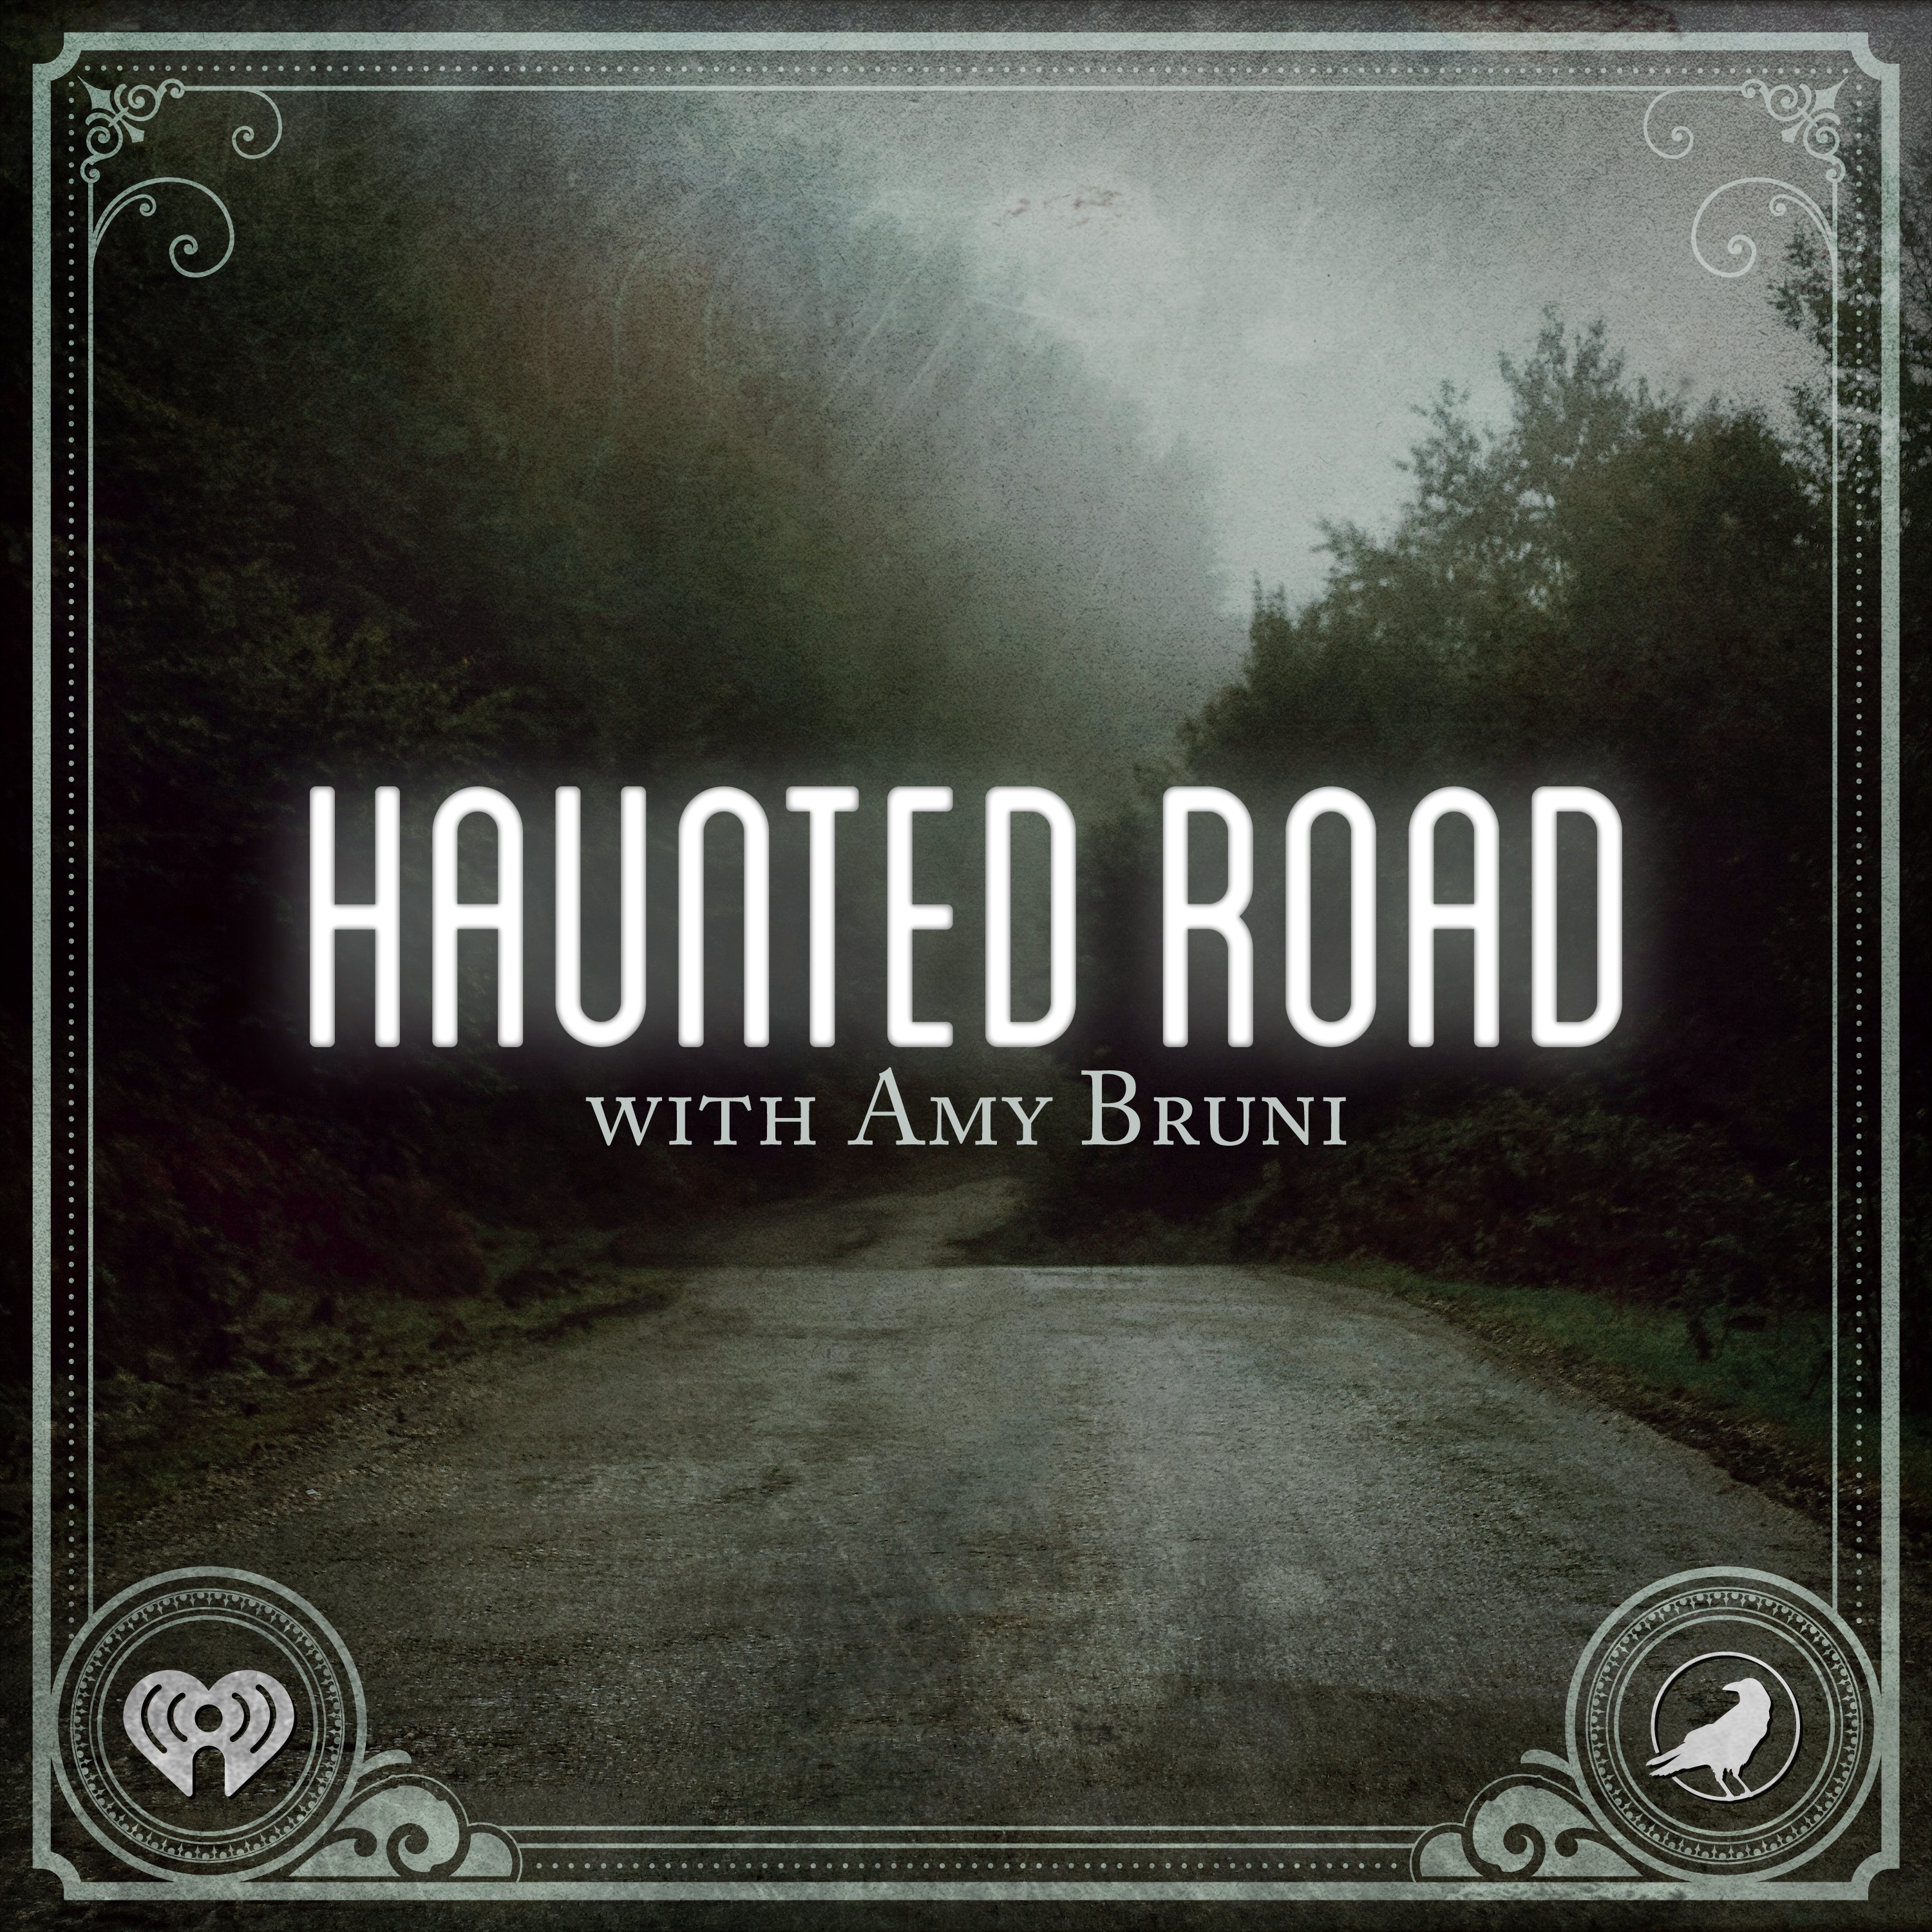 Coming Soon - Haunted Road Season 5